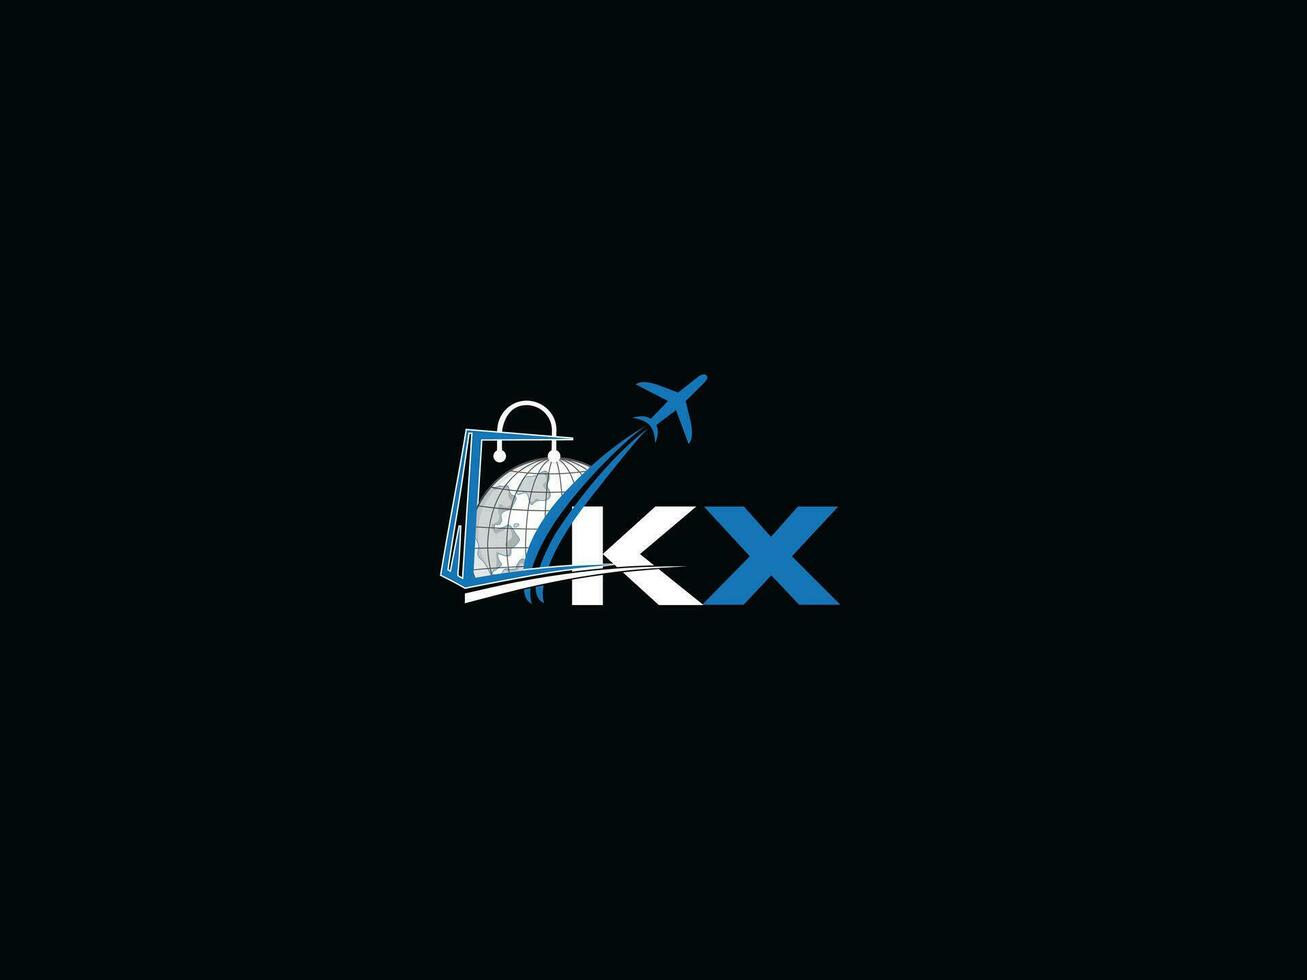 élégant global kx Voyage logo, typographie des lettres kx logo icône vecteur Stock